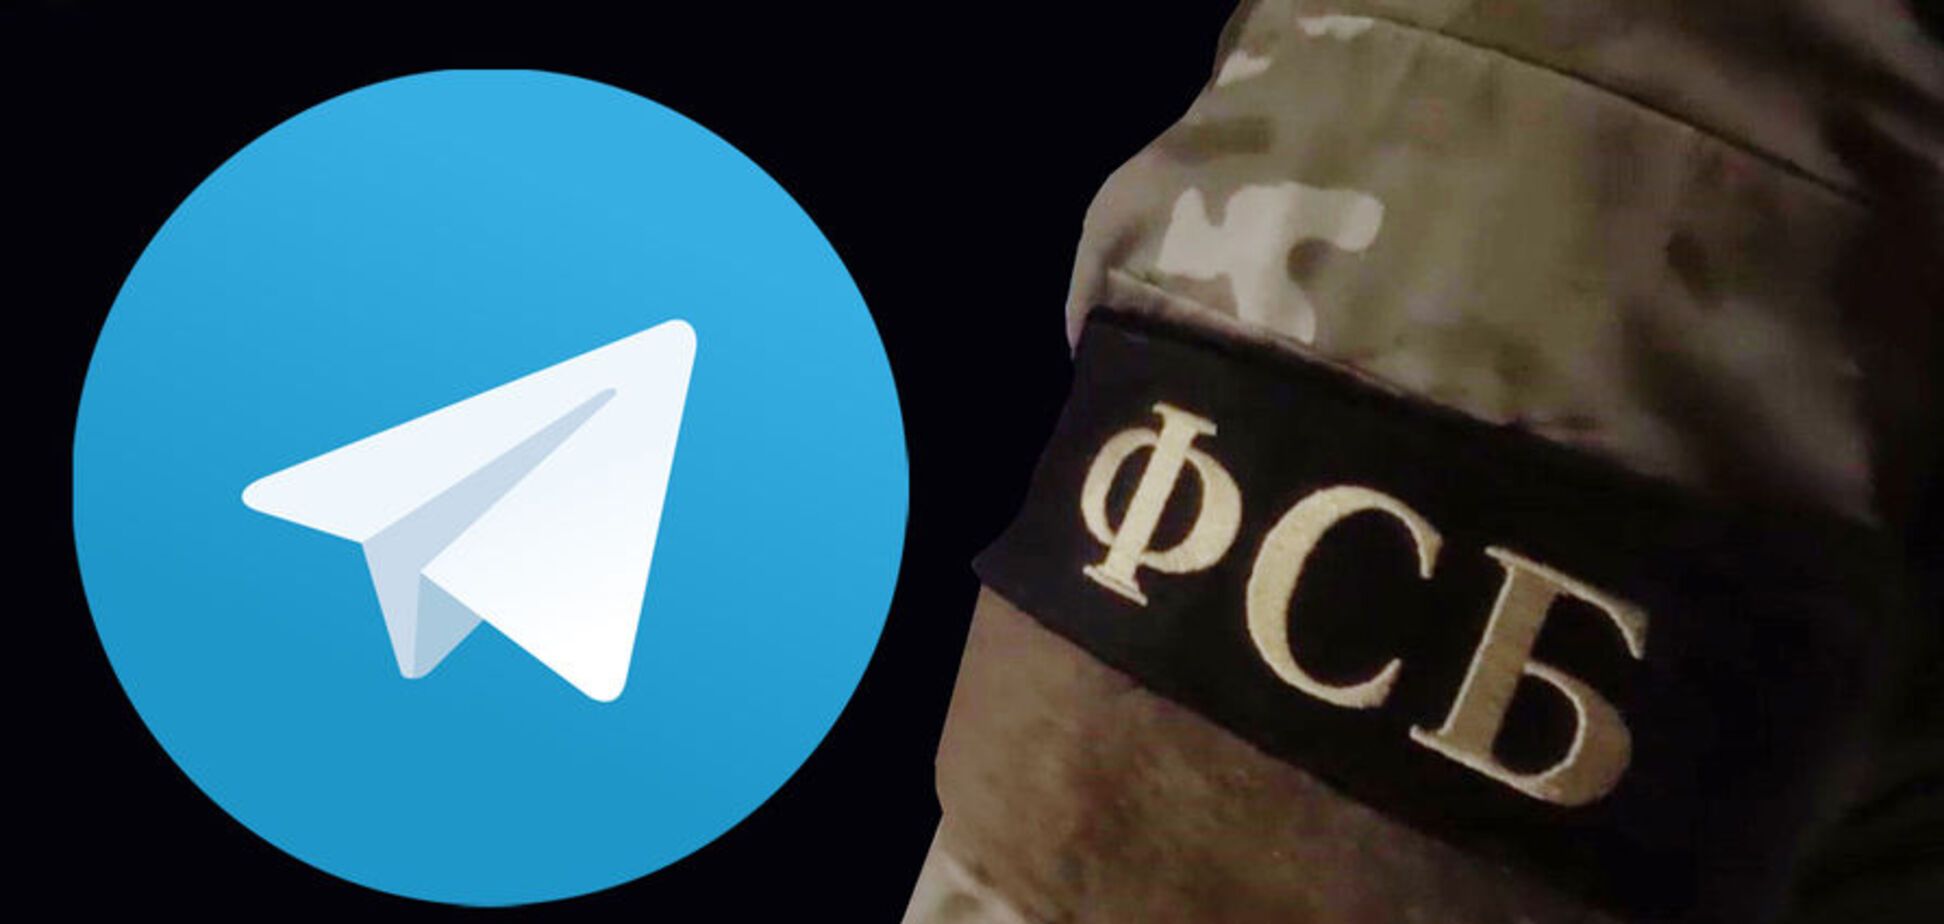 Как обойти блокировку Telegram: три способа